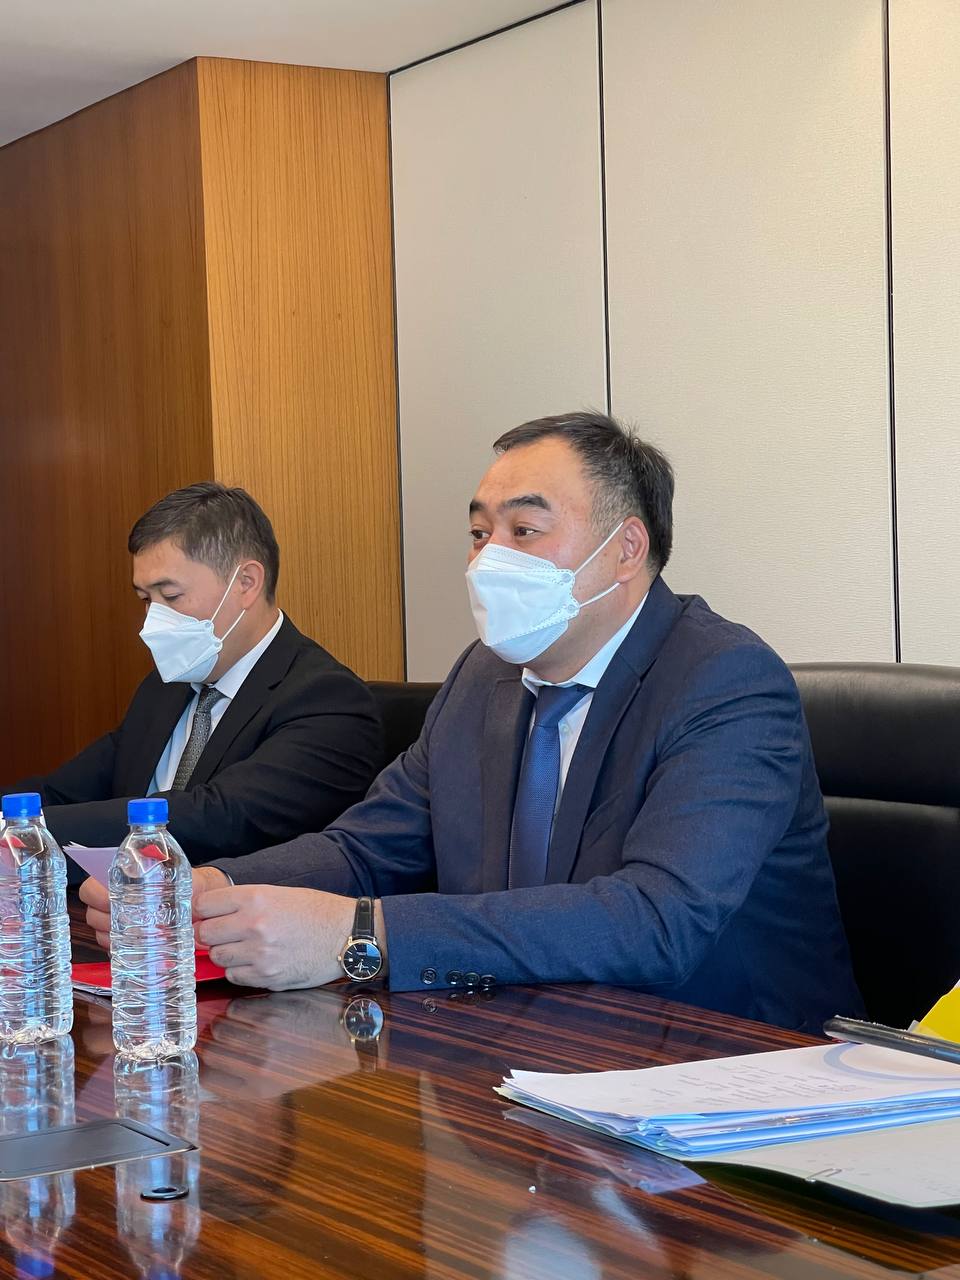 МВД: Улан Ниязбеков провел переговоры с главой Полиции Чешской Республики Яном Свейдером о двустороннем сотрудничестве